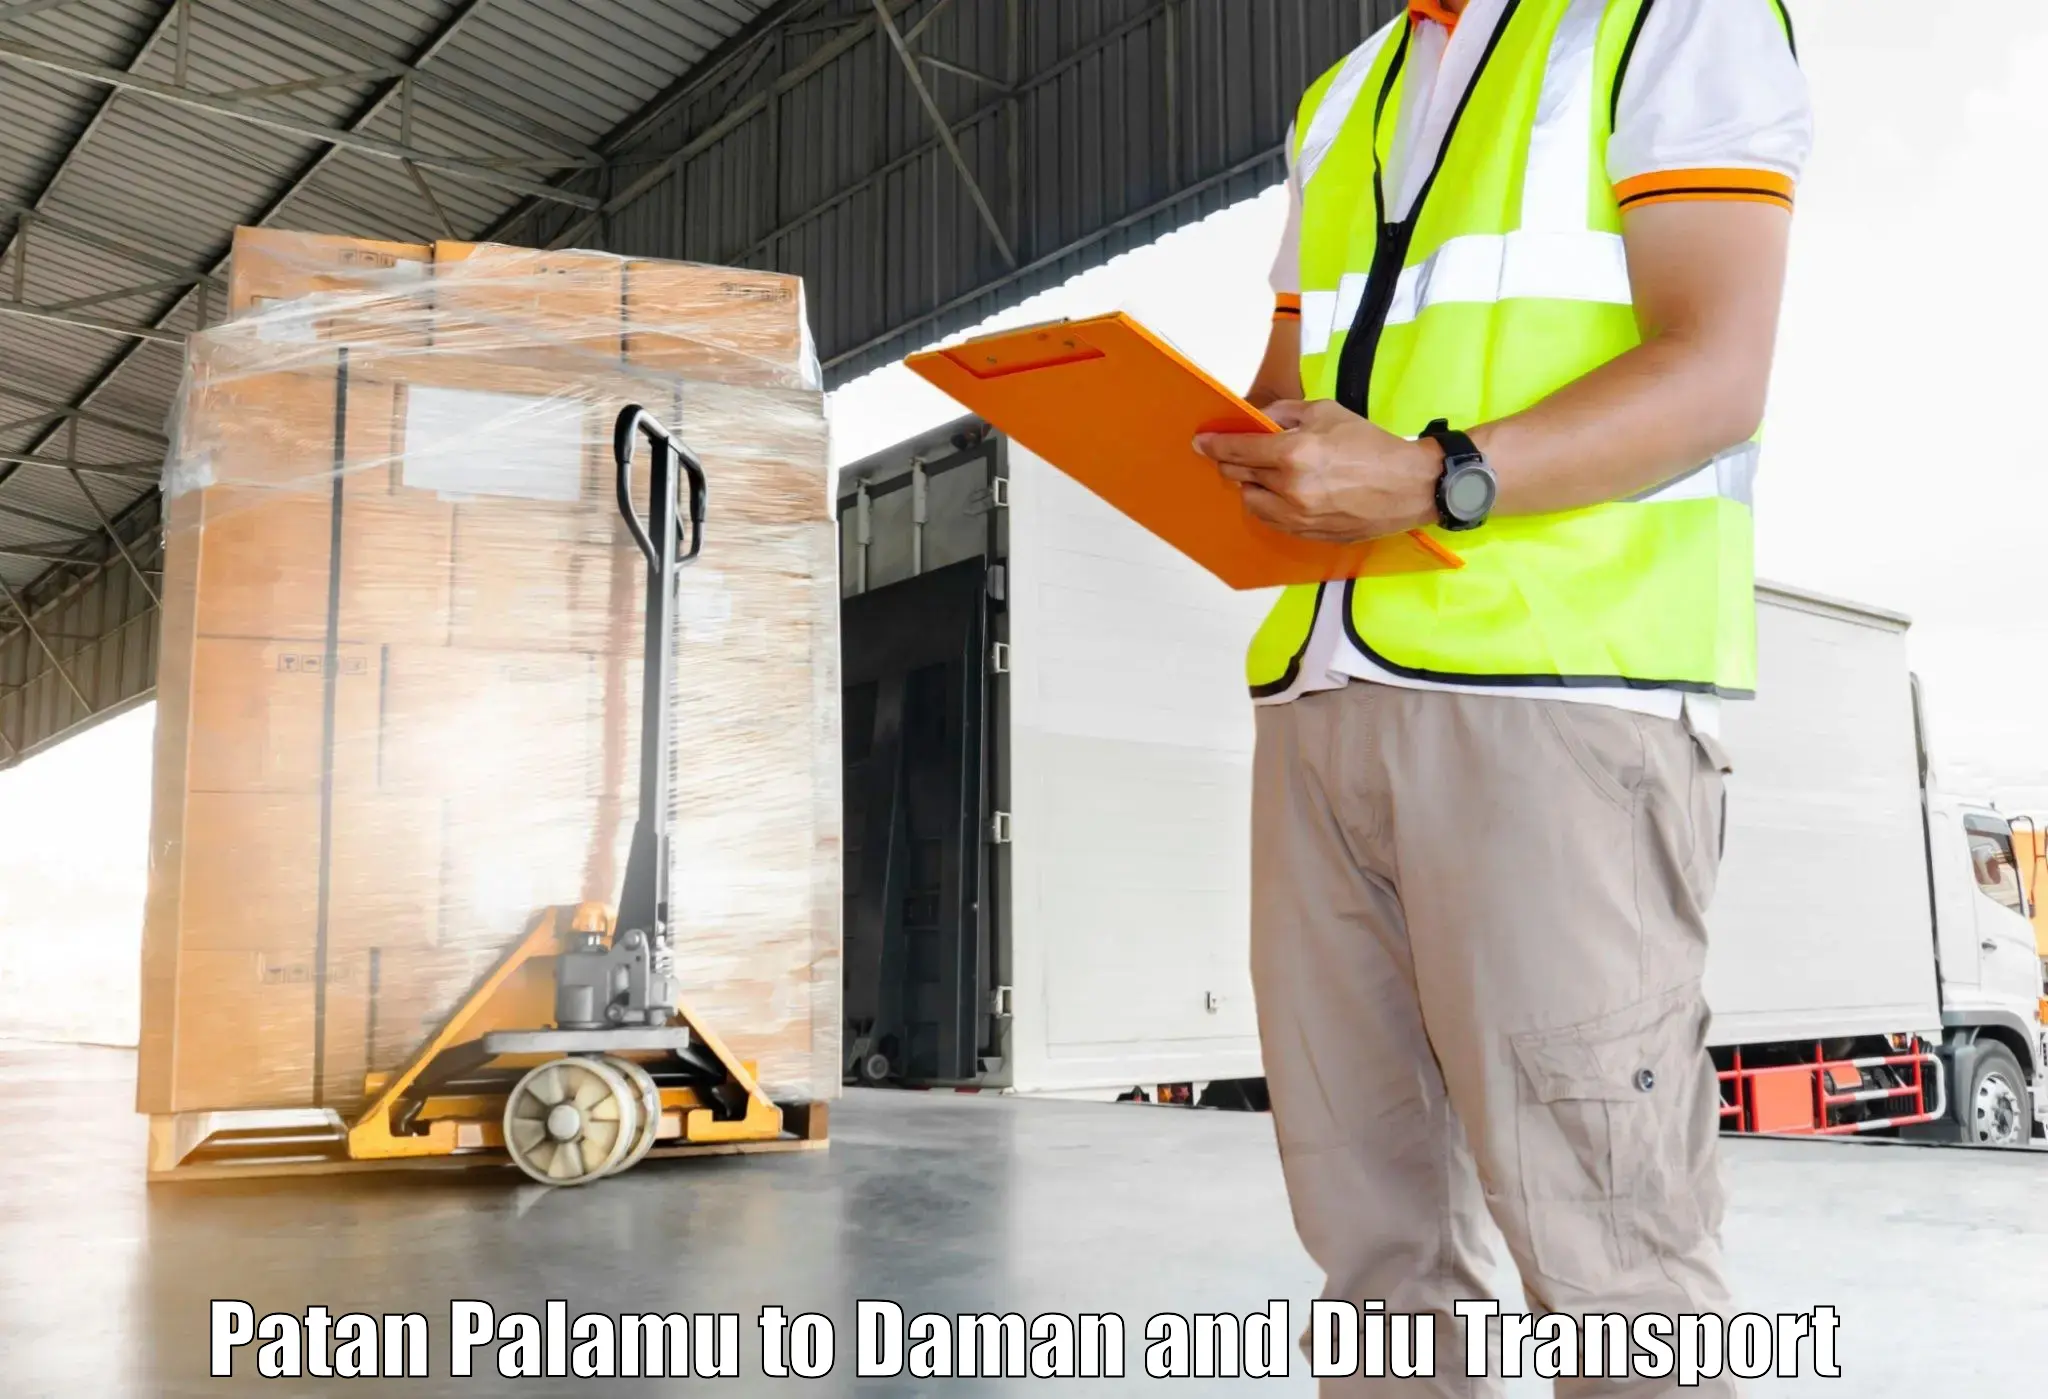 Daily parcel service transport Patan Palamu to Daman and Diu